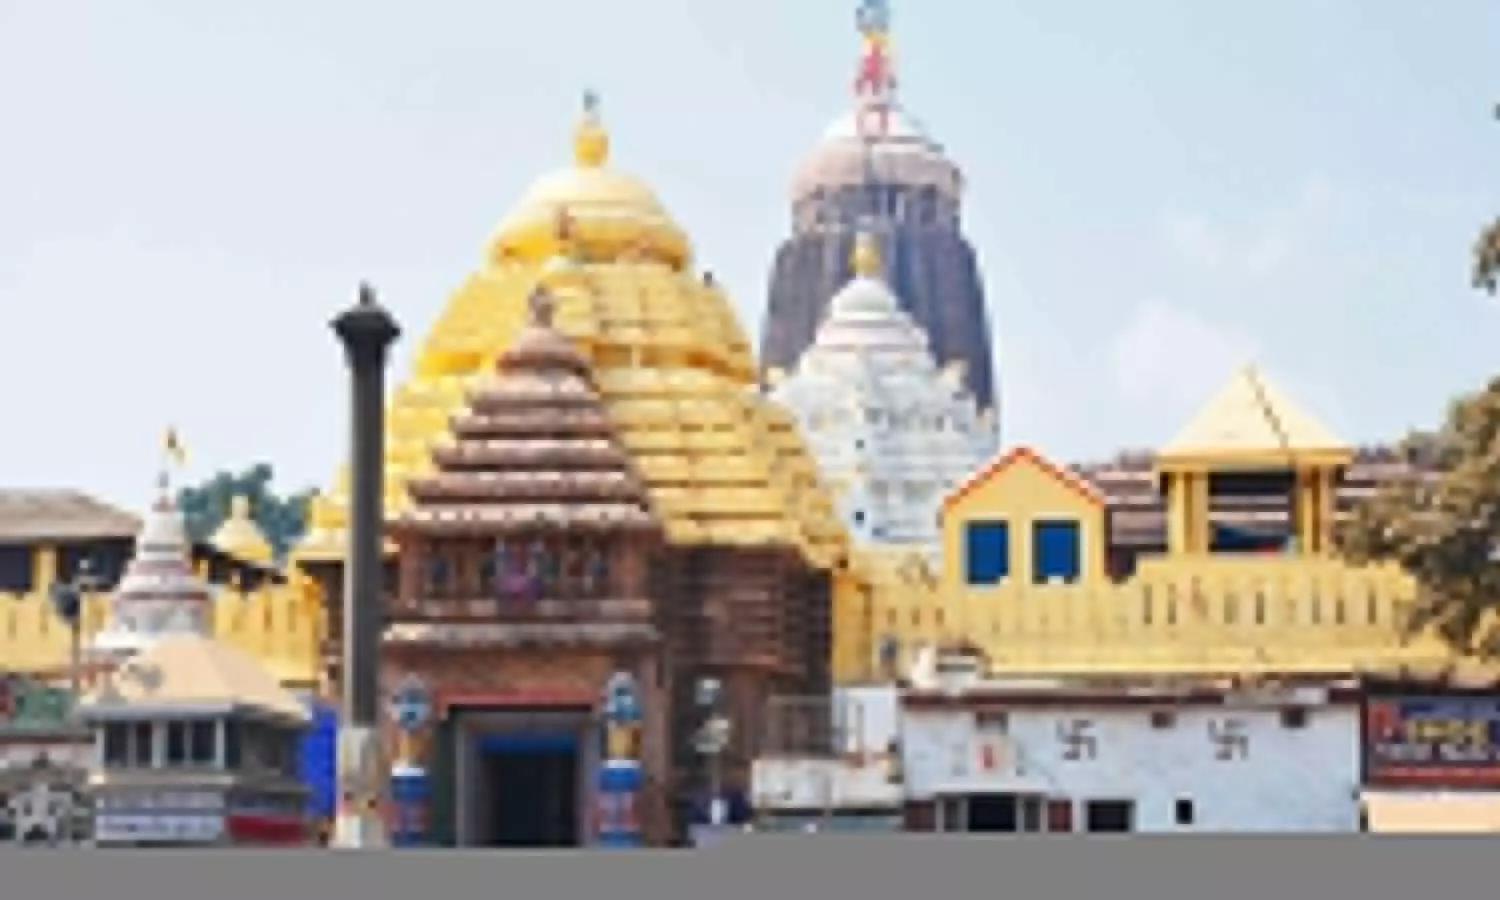 Shri Jagannath Dham